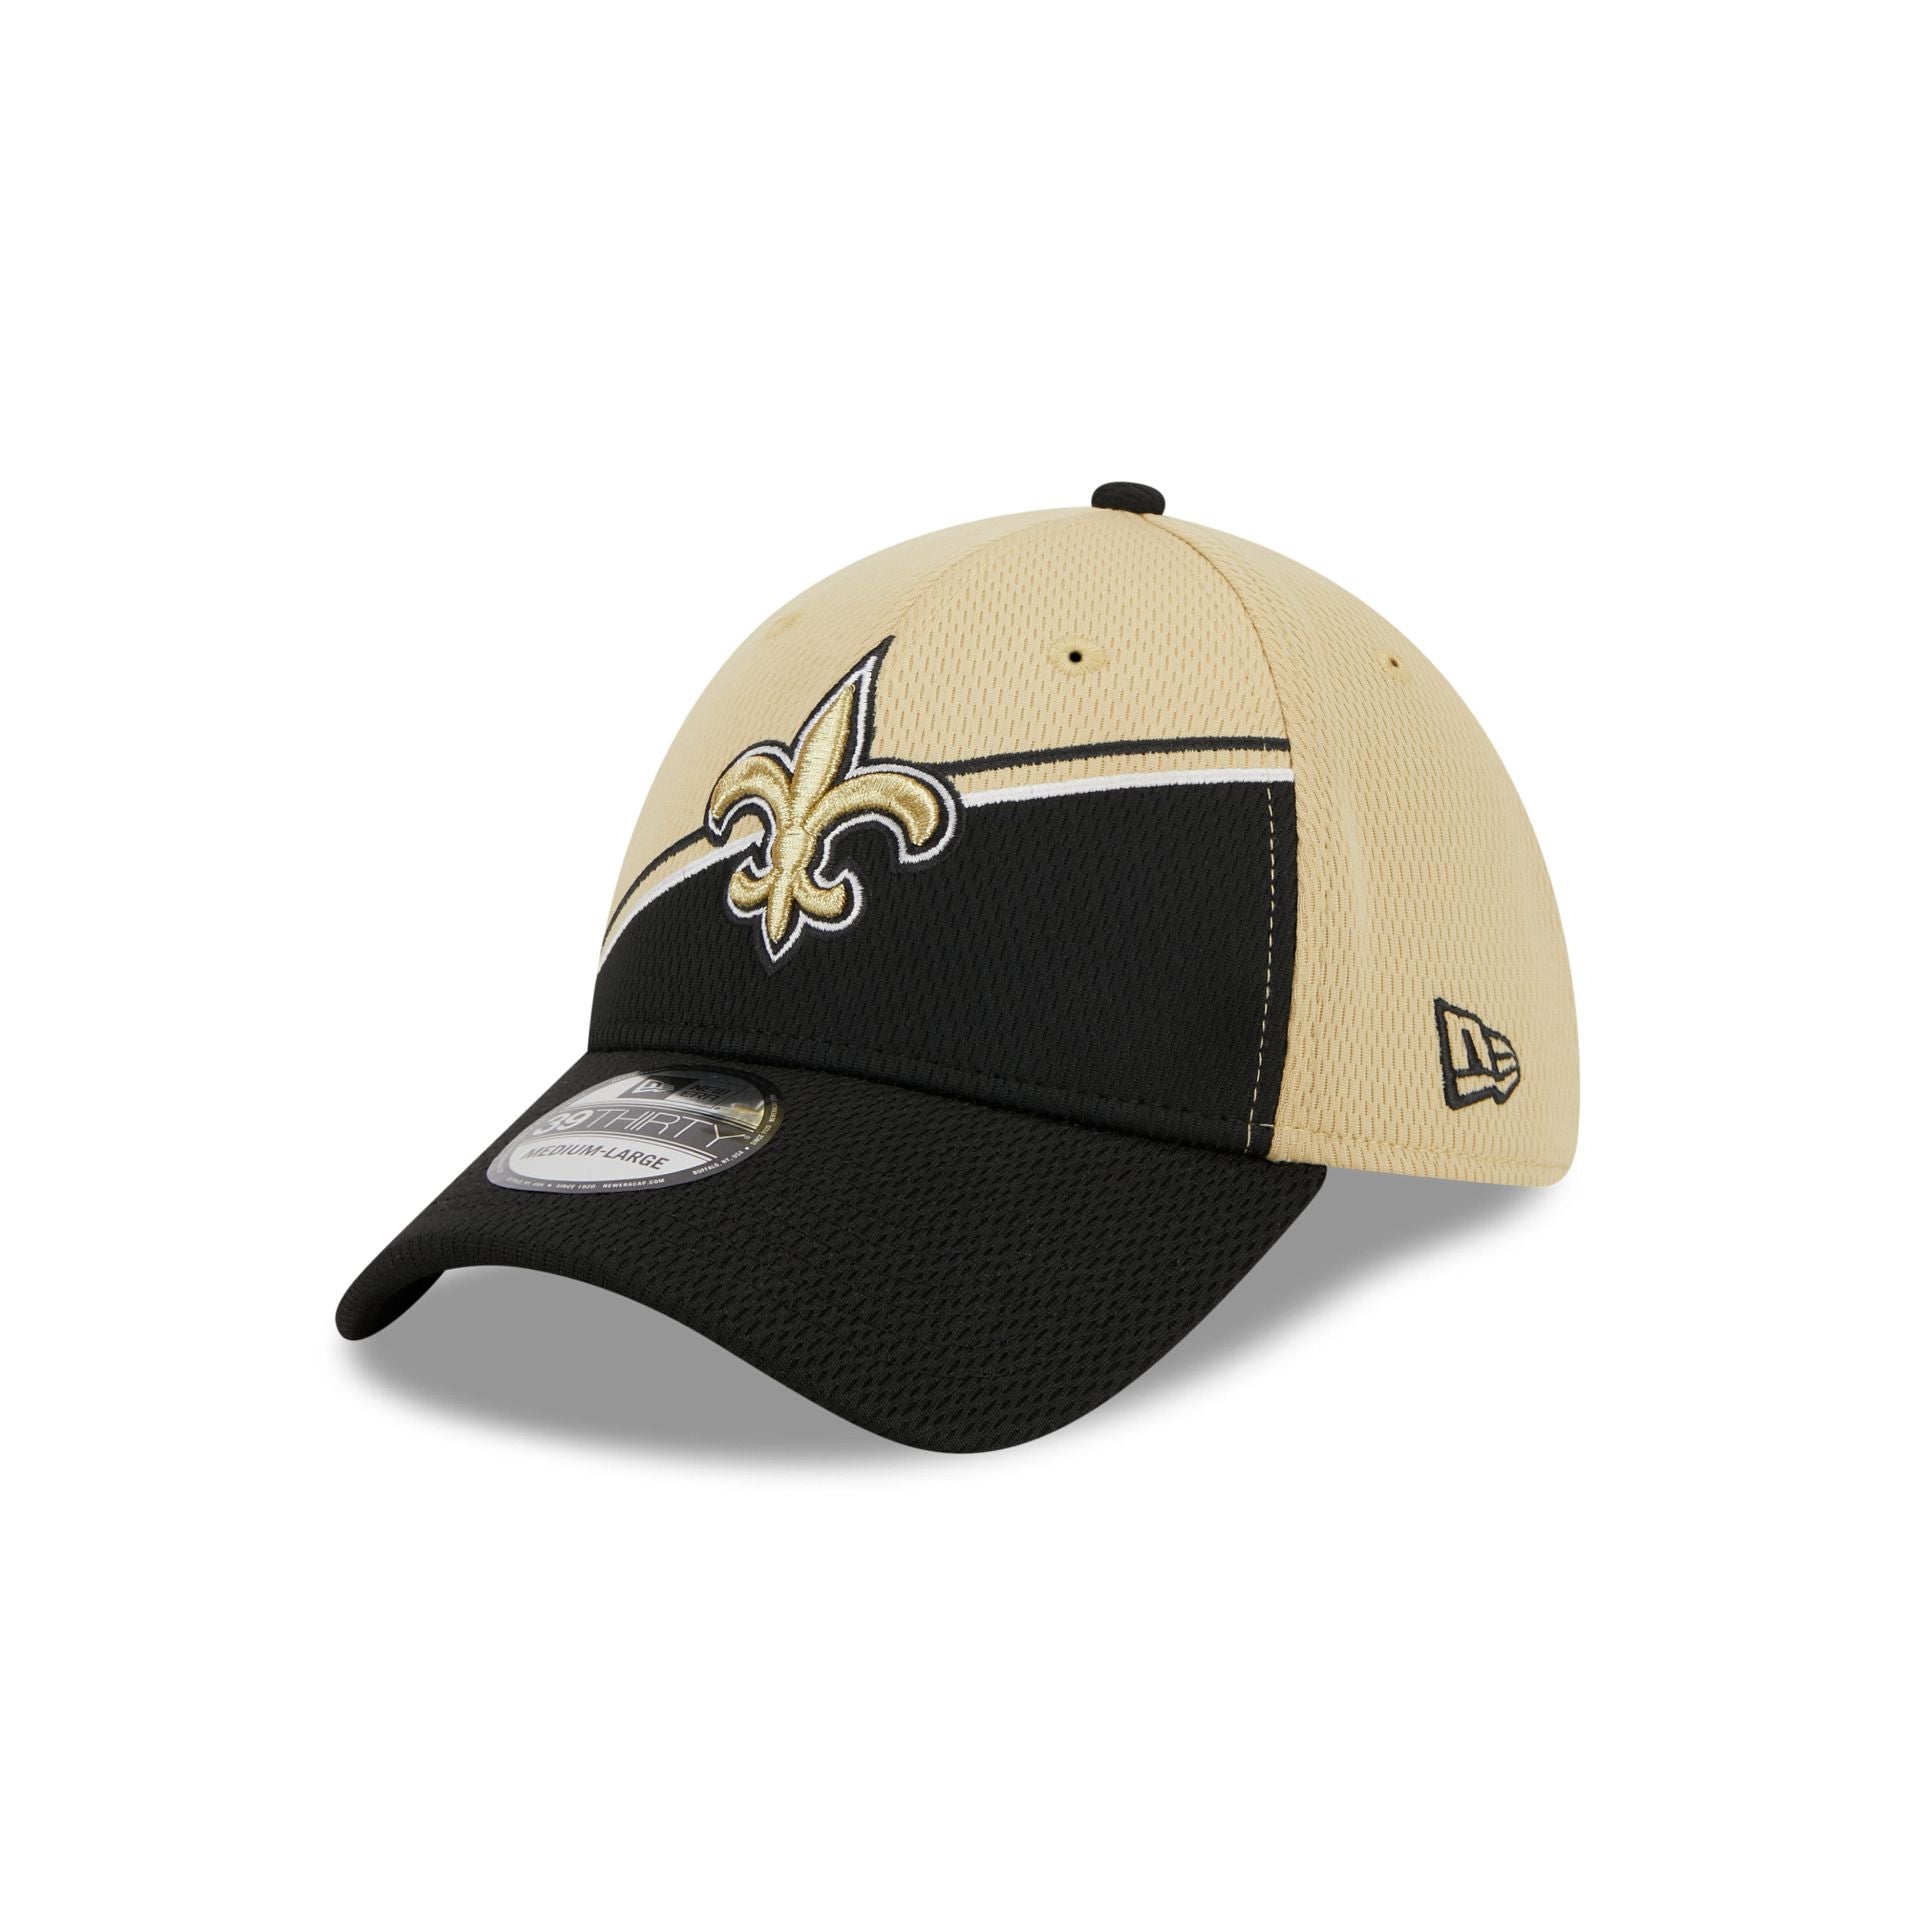 Men's New Era Black/Gold New Orleans Saints Surge 39THIRTY Flex Hat